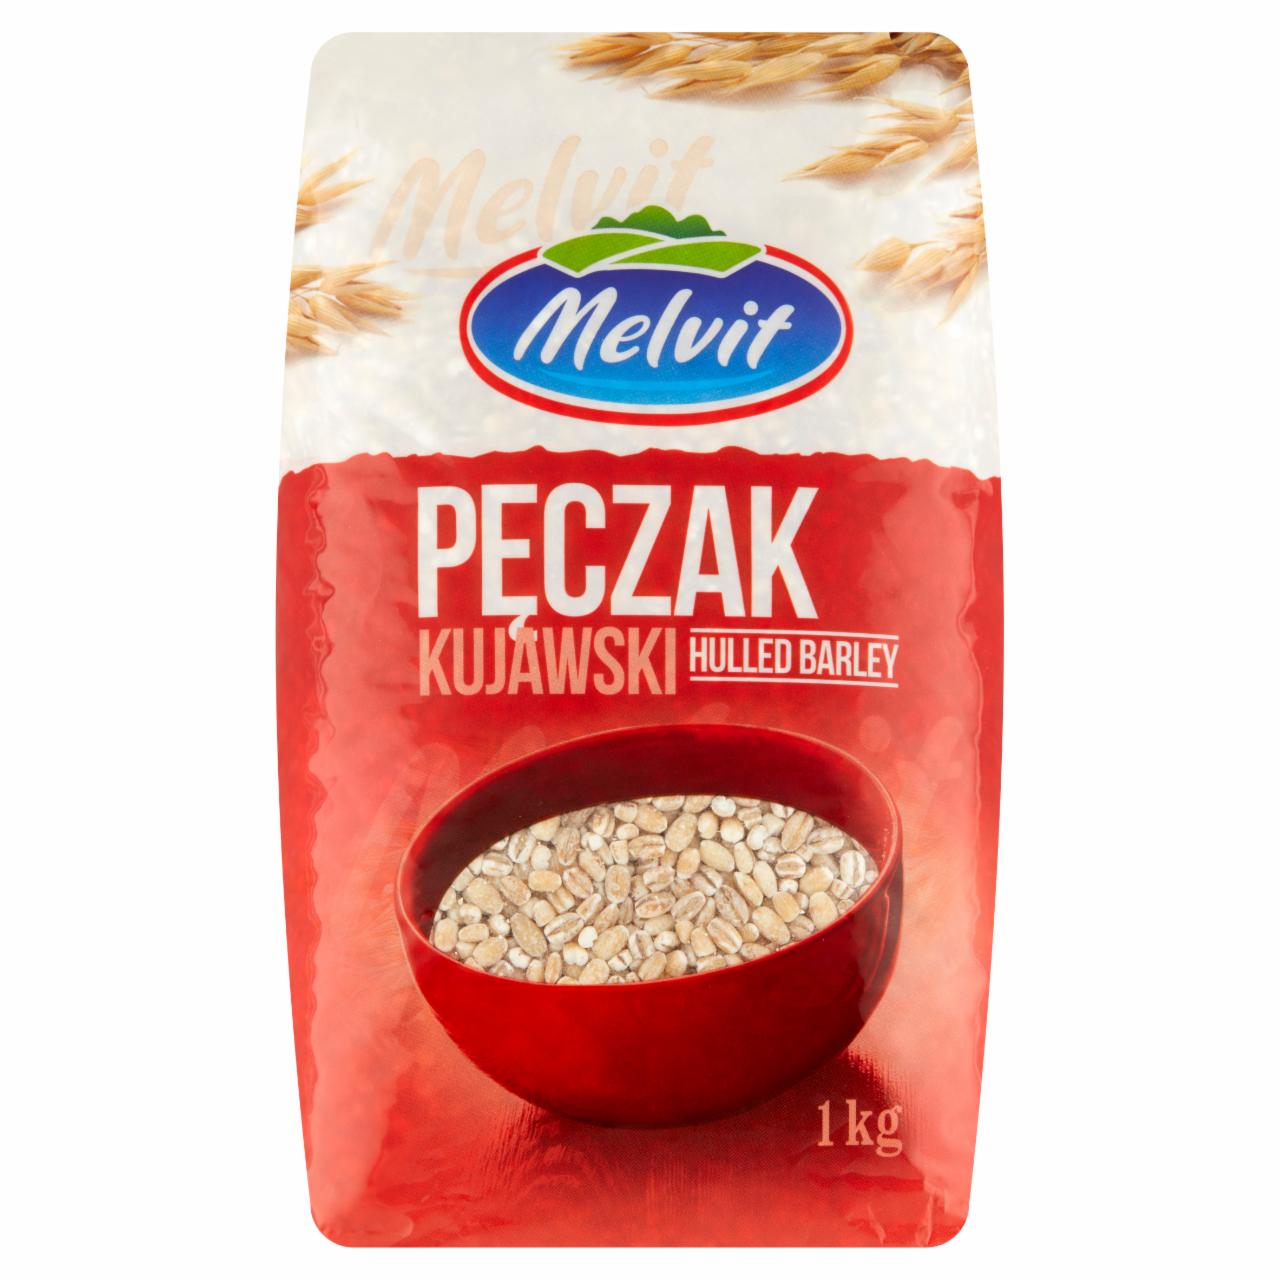 Zdjęcia - Melvit Pęczak kujawski 1 kg